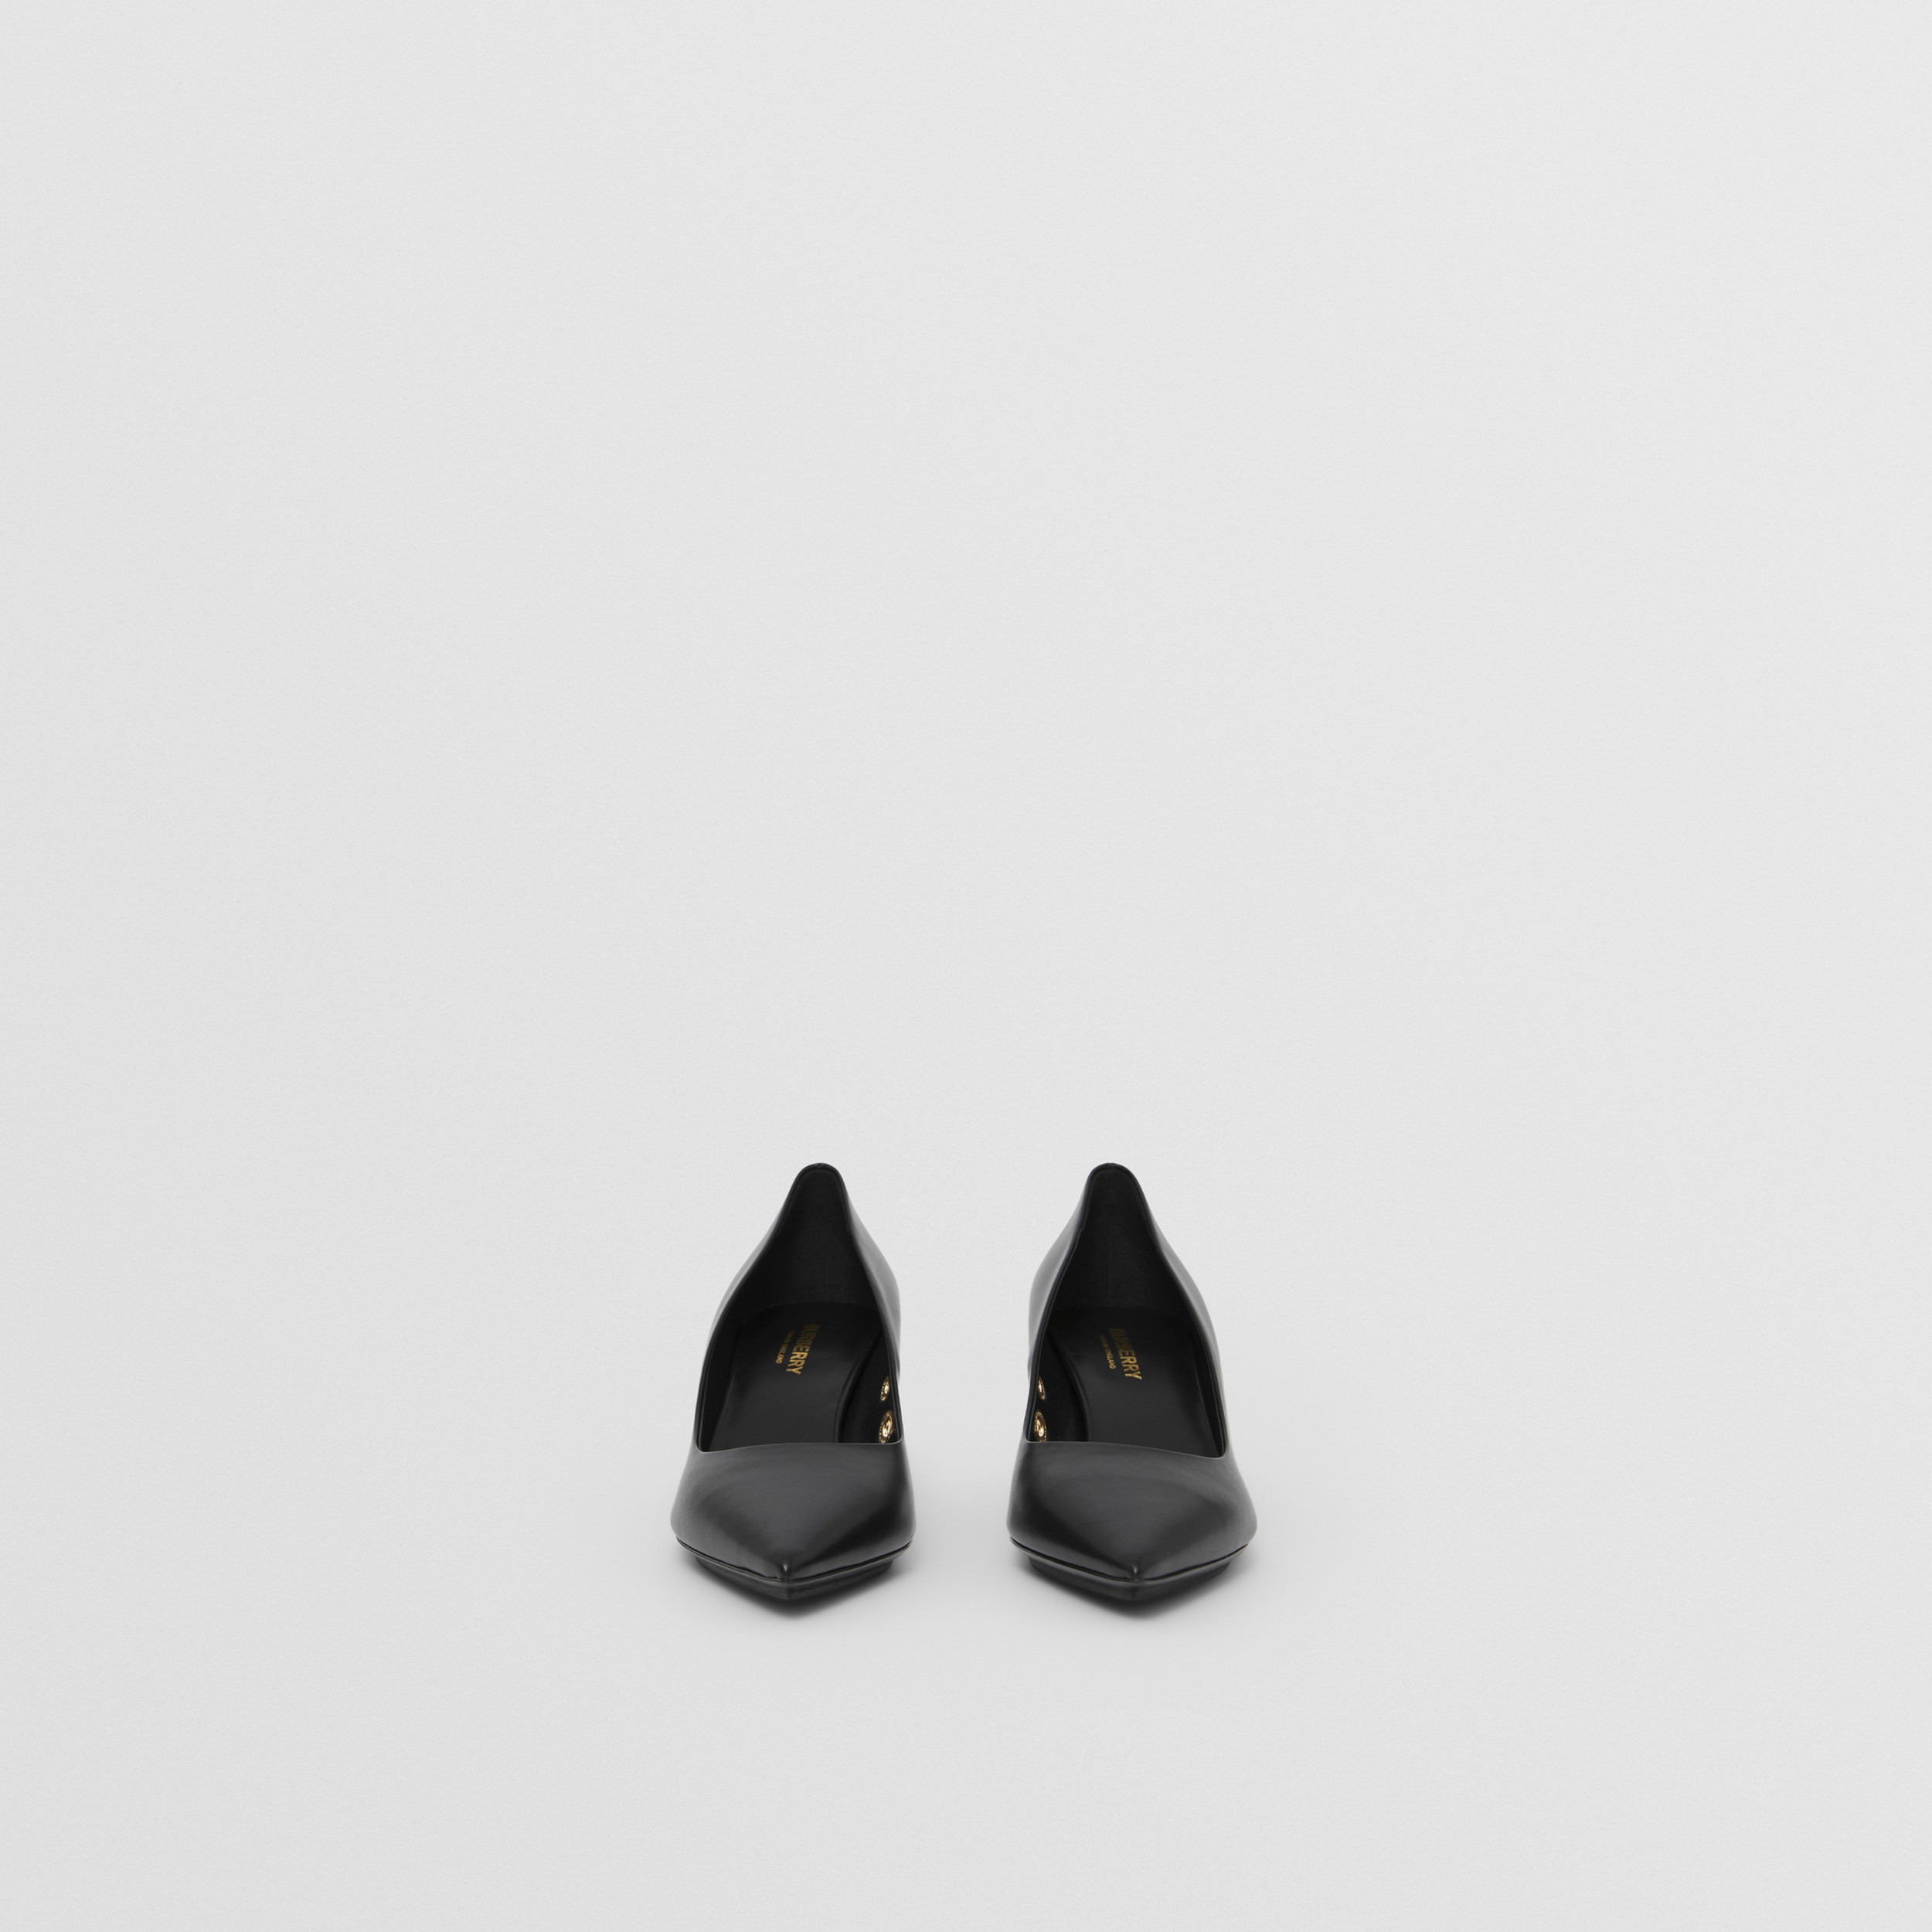 Scarpins de bico fino de couro com detalhe de ilhoses (Preto) - Mulheres | Burberry® oficial - 4